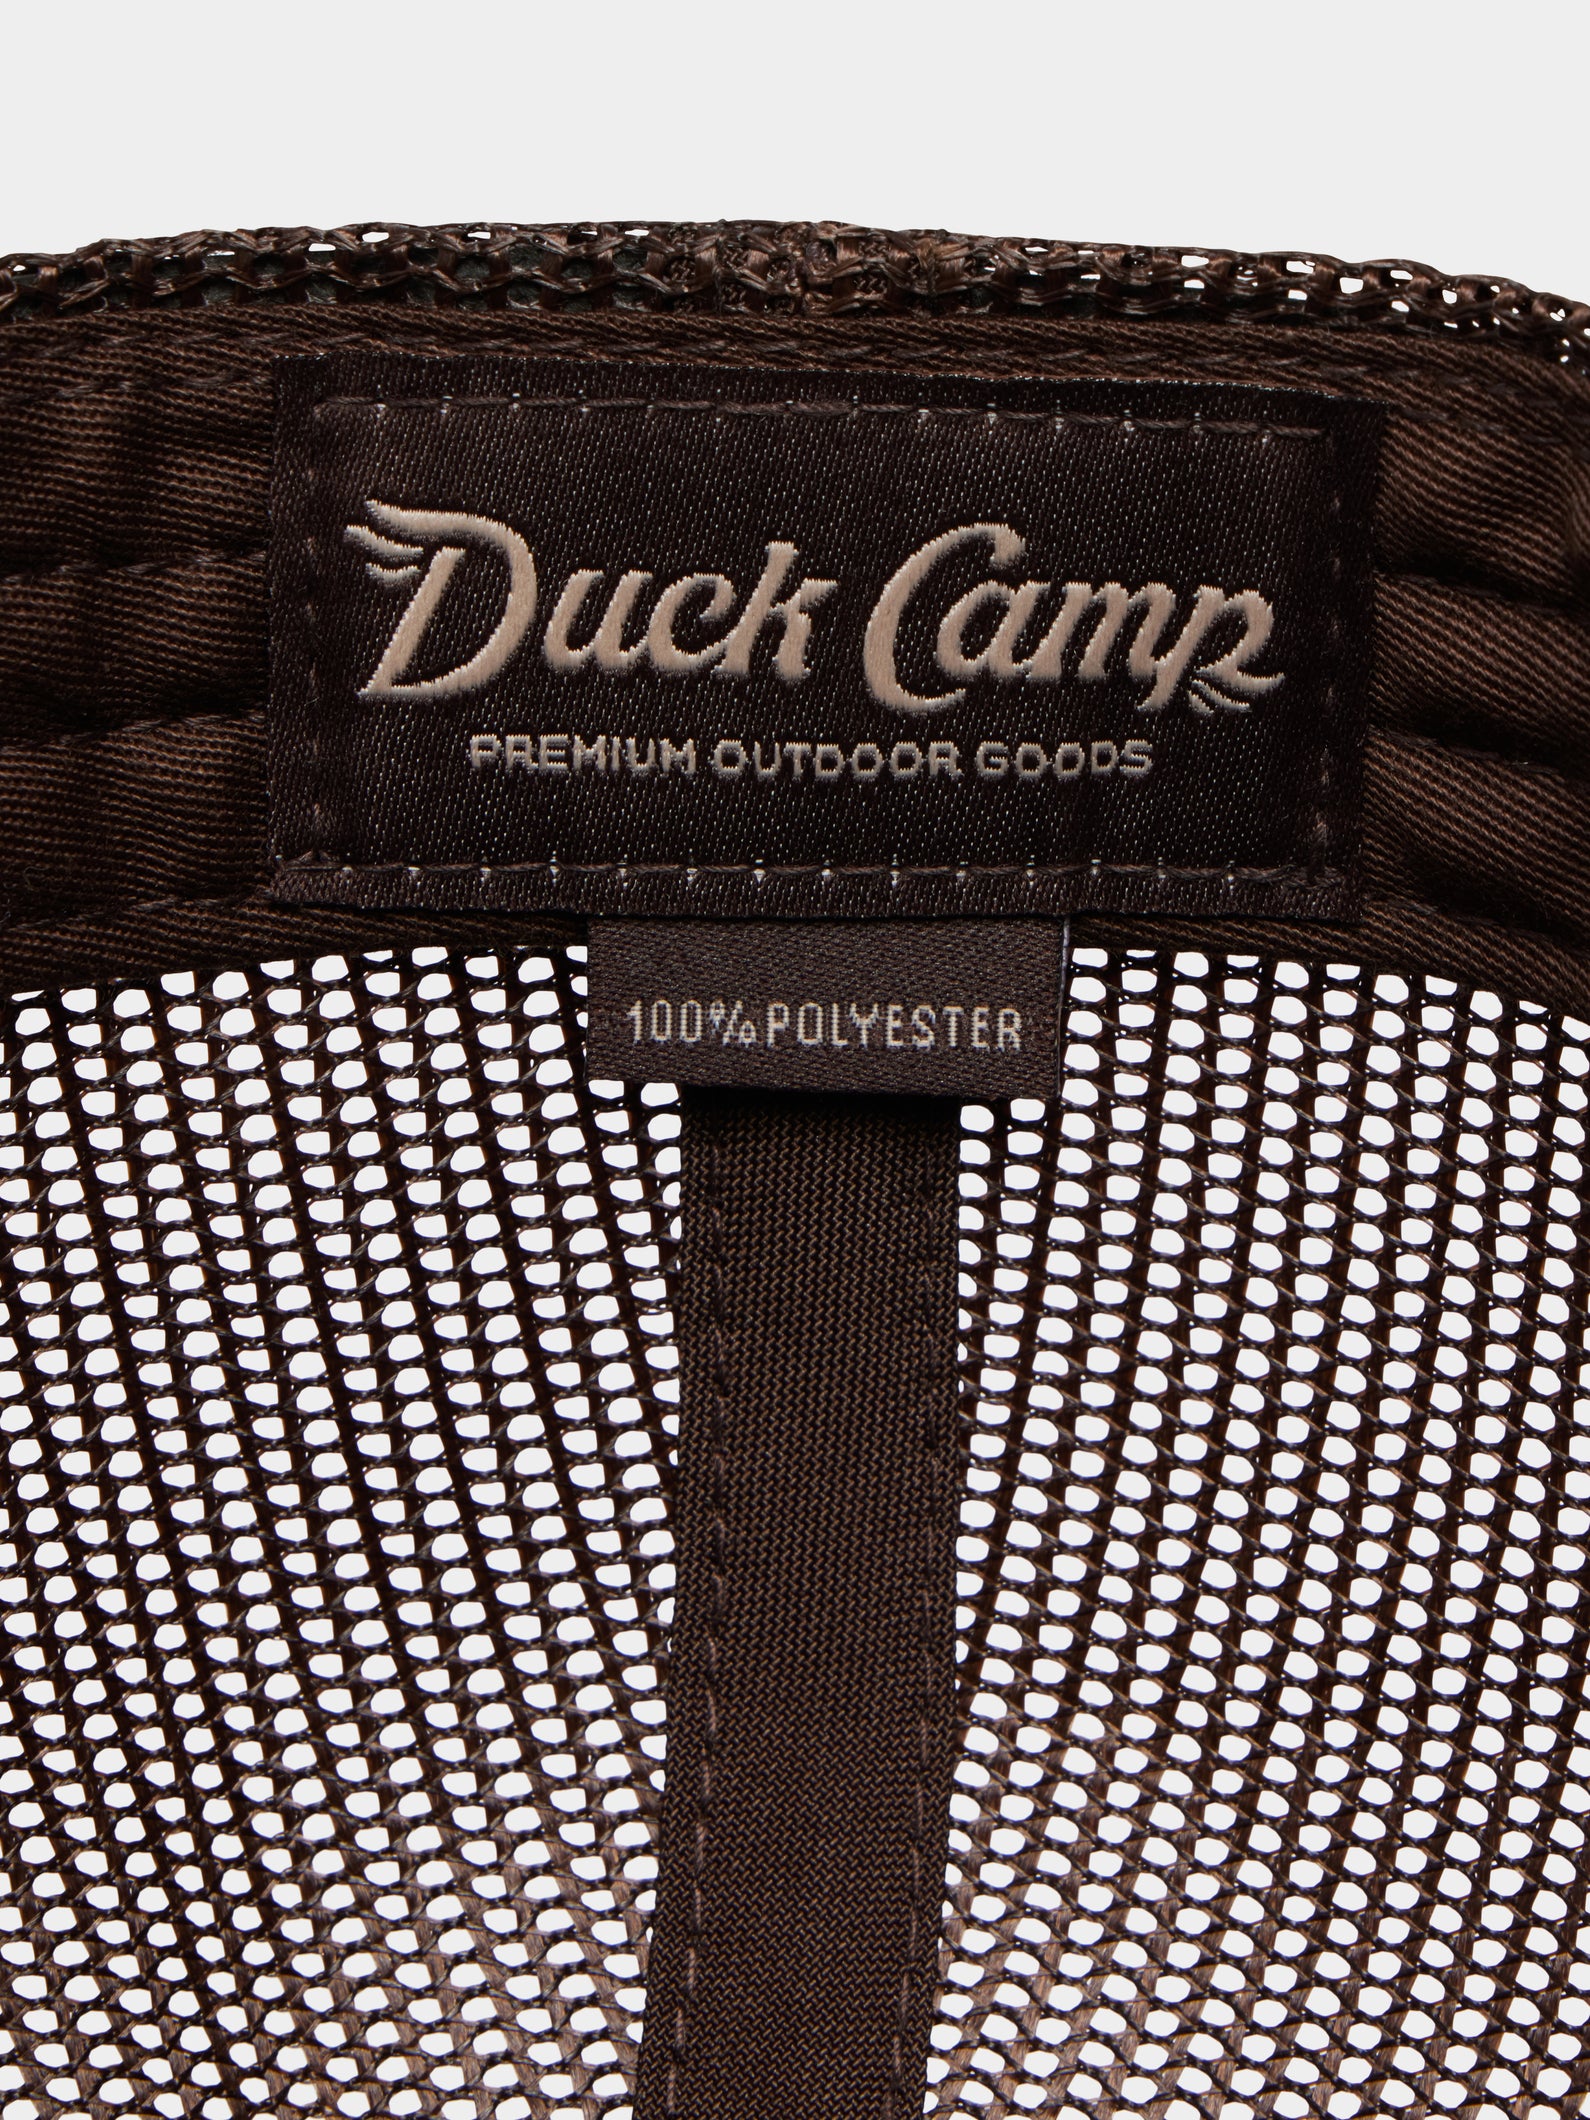 Duck Camp Trucker Hat - Midland